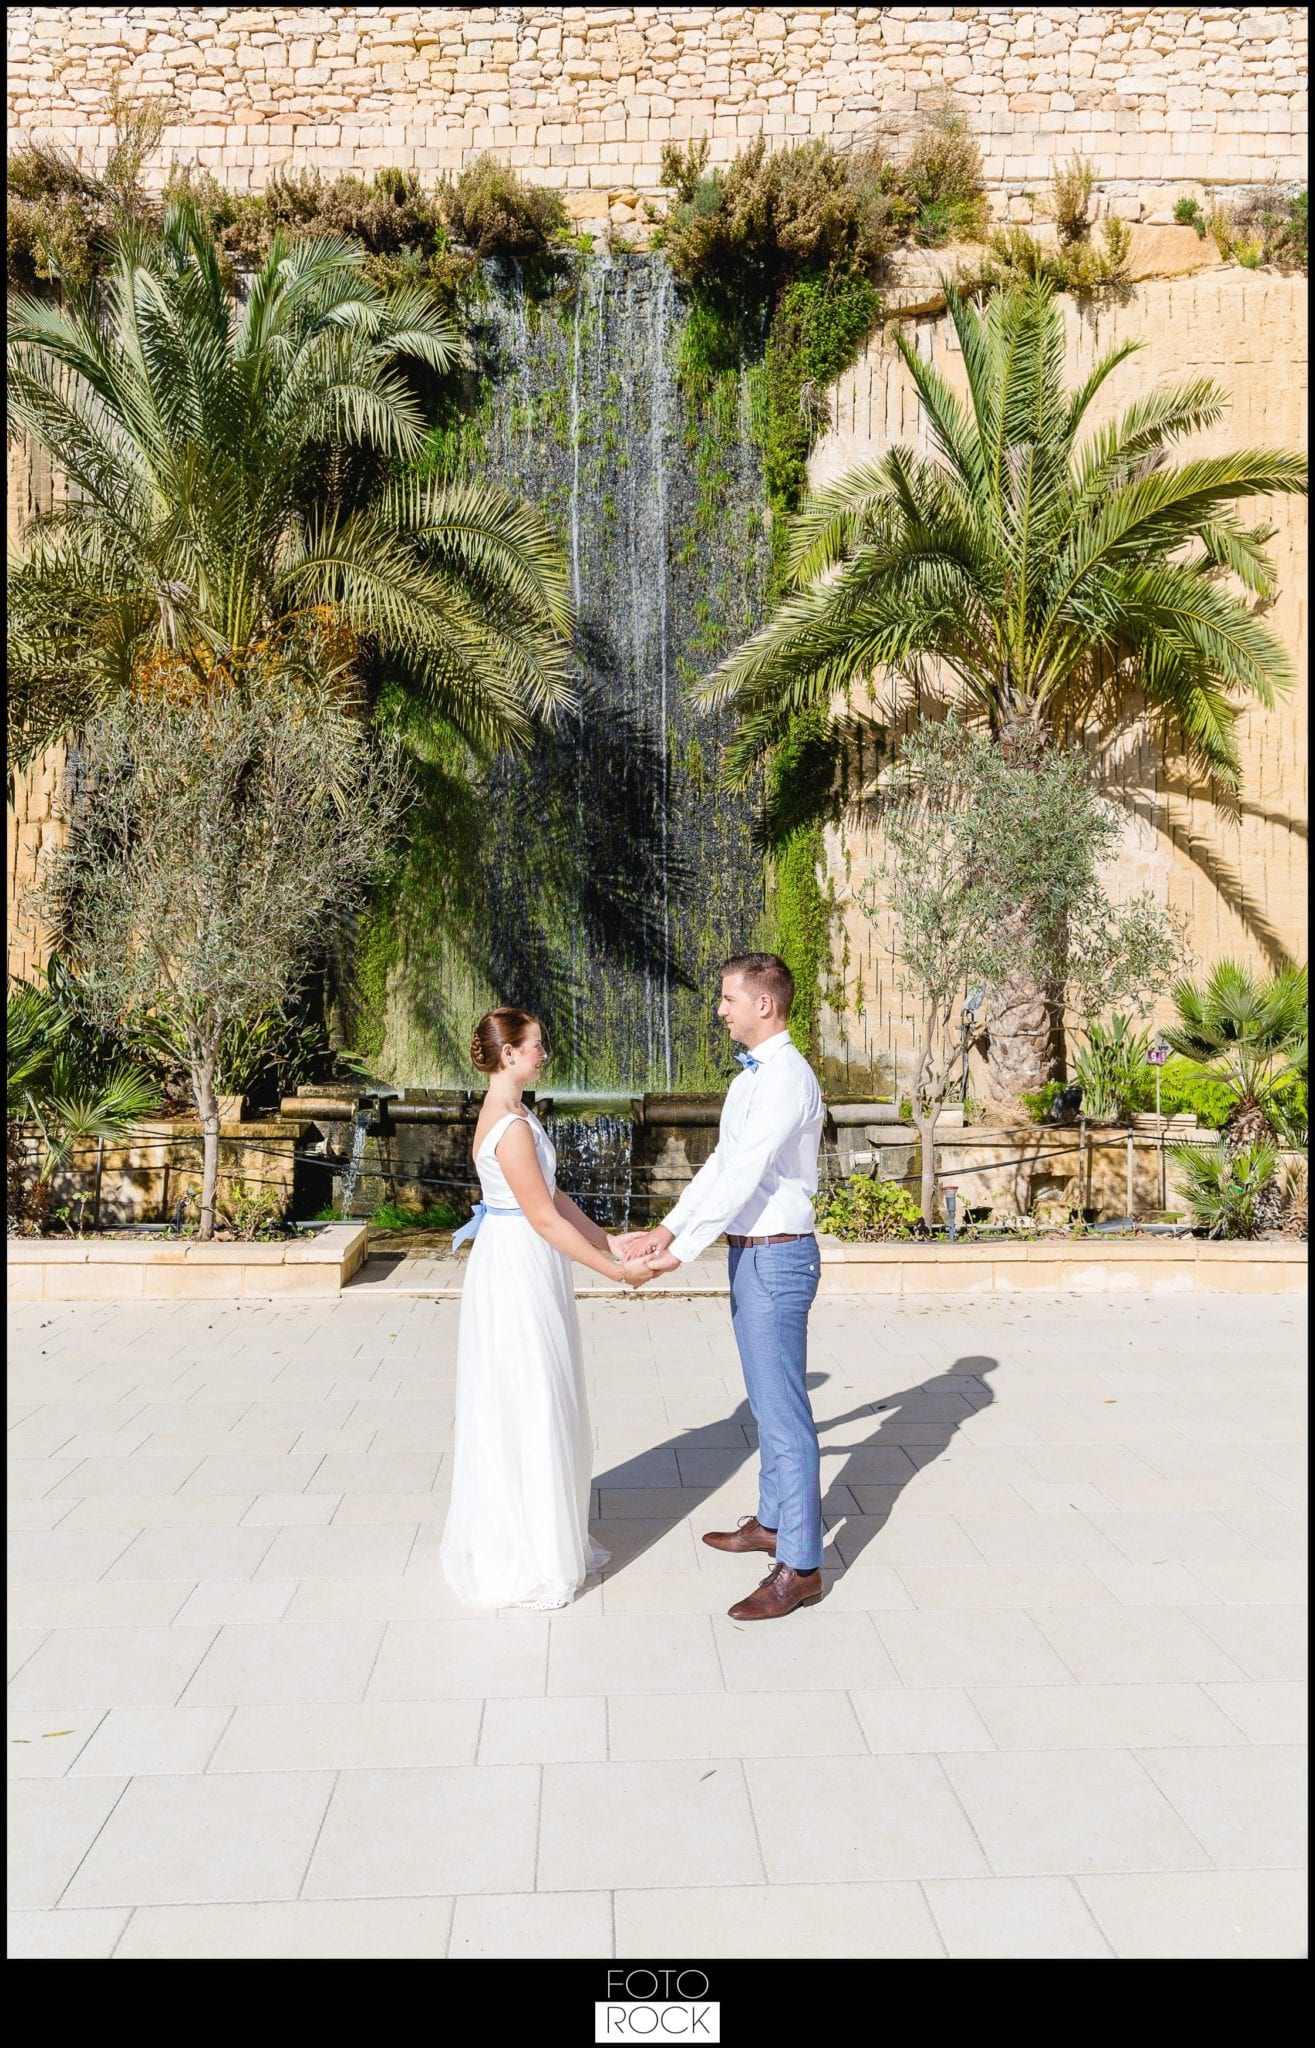 Hochzeit Malta Brautpaar Wasserfall Blumen Mauer Palmen